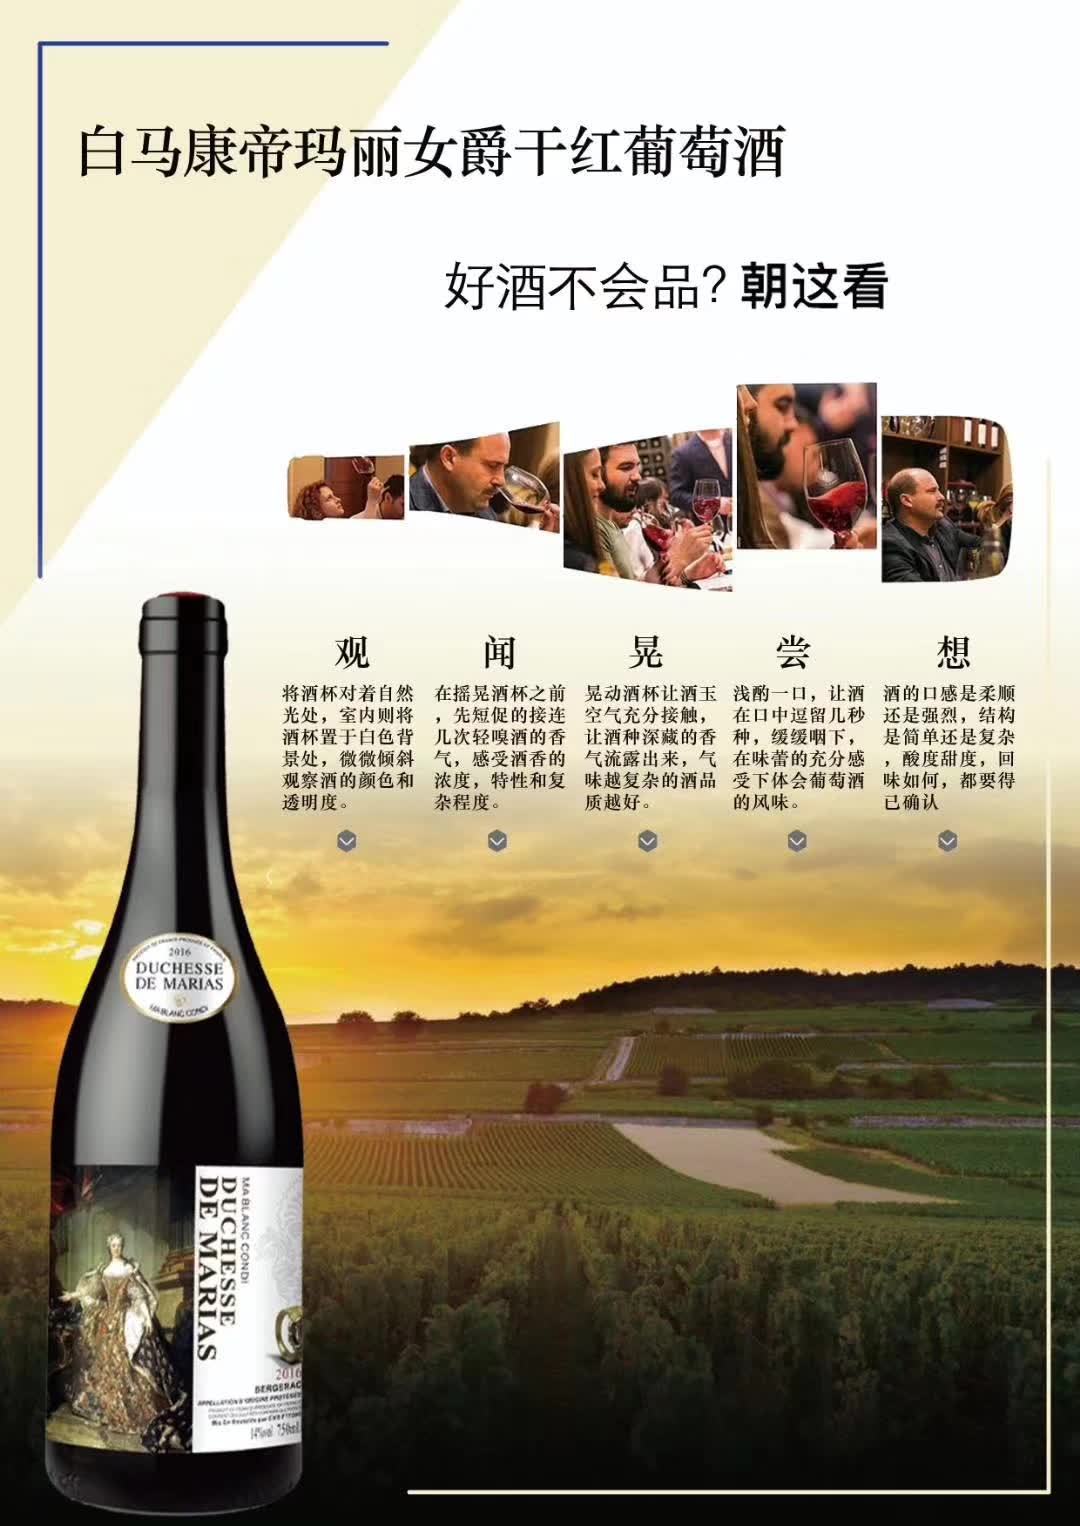 上海万耀贸易白马康帝系列玛丽女爵法国进口混酿葡萄酒